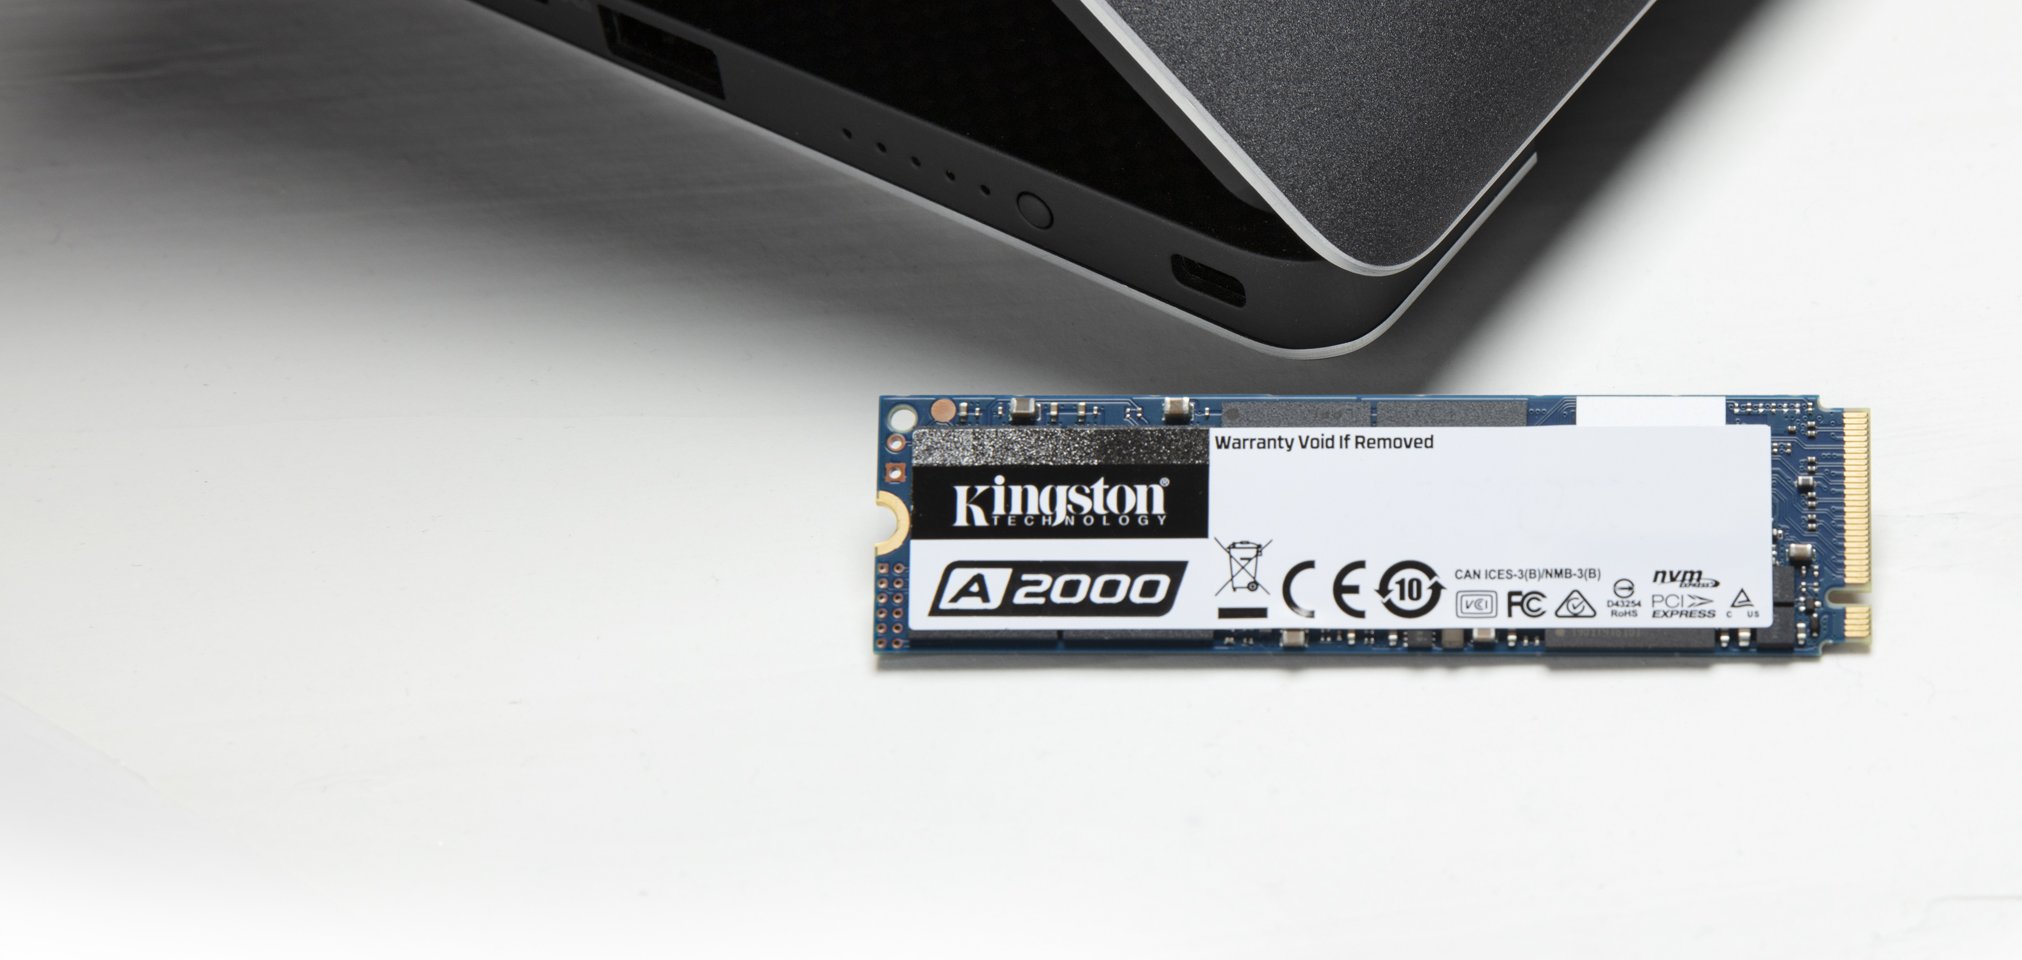 KINGSTON A2000 500GB SSD - Neon Technology NVMe M.2